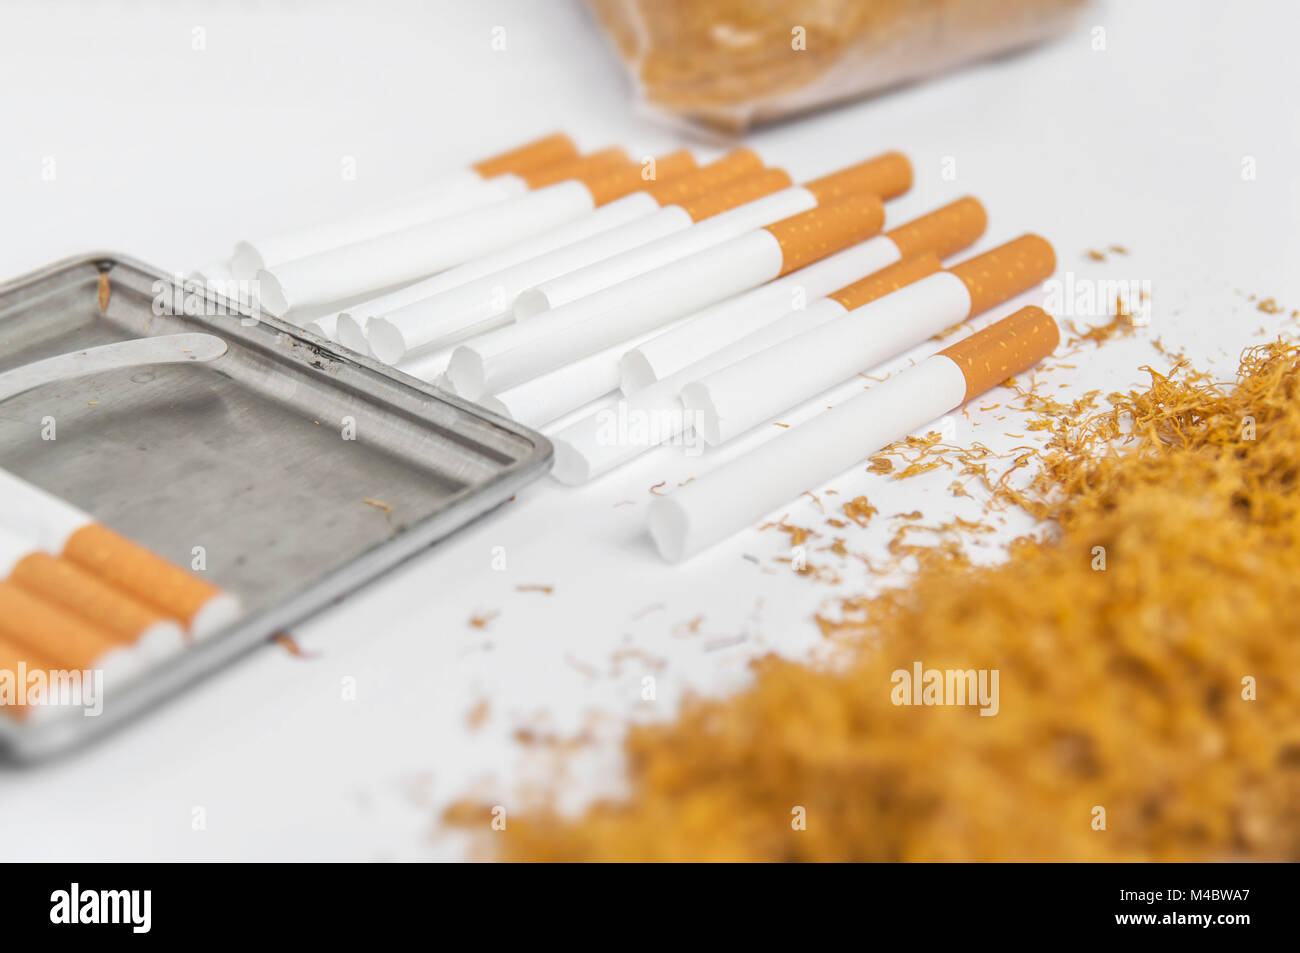 Zubehör, Zum Von Zigaretten Sich, Tabak, Filter, Papiere Zu Drehen  Stockfoto - Bild von neigung, form: 103245282